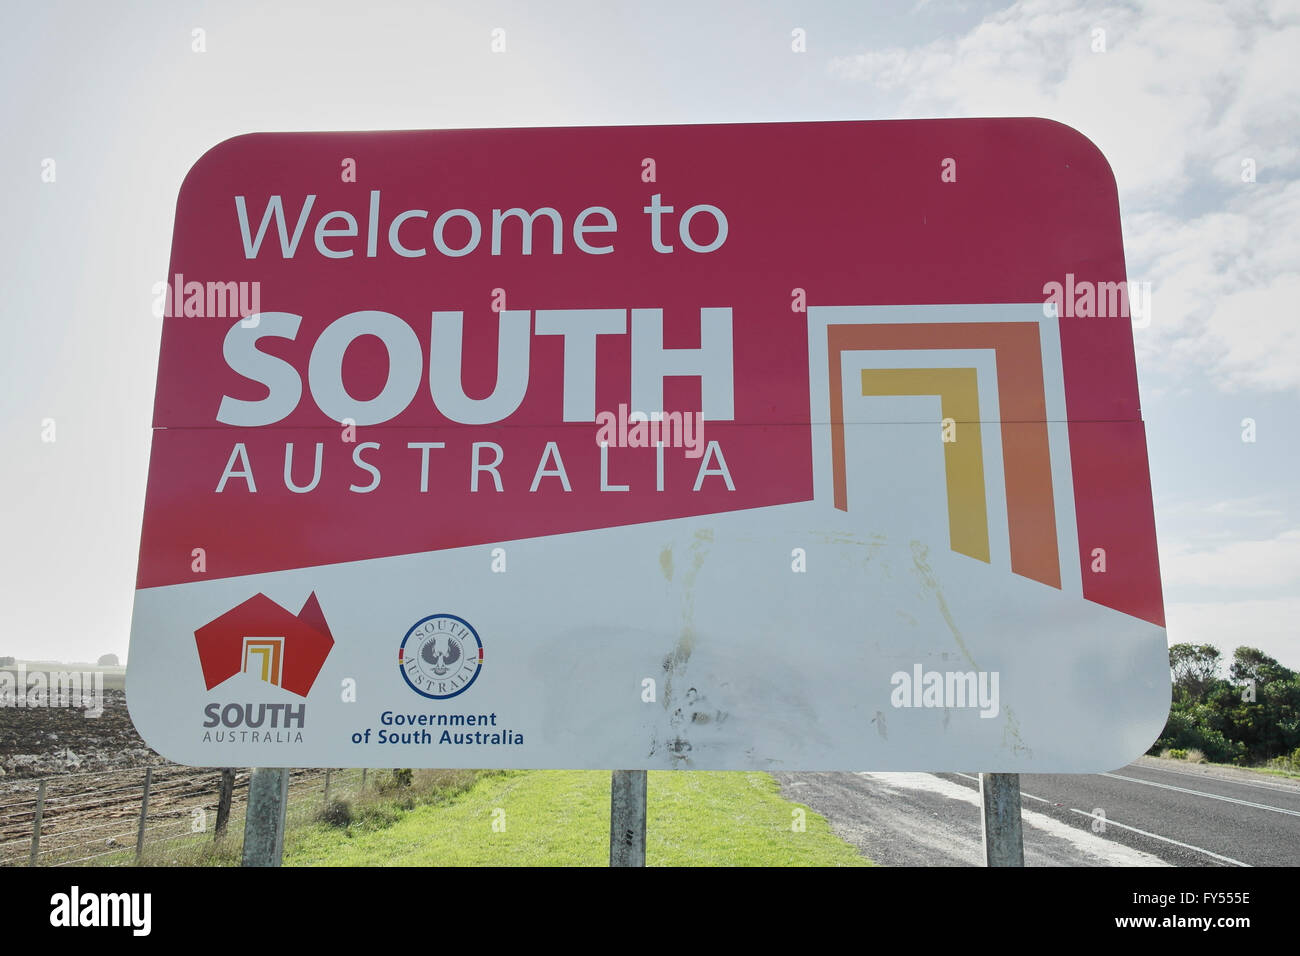 L'Australie du Sud - Australie signe Banque D'Images